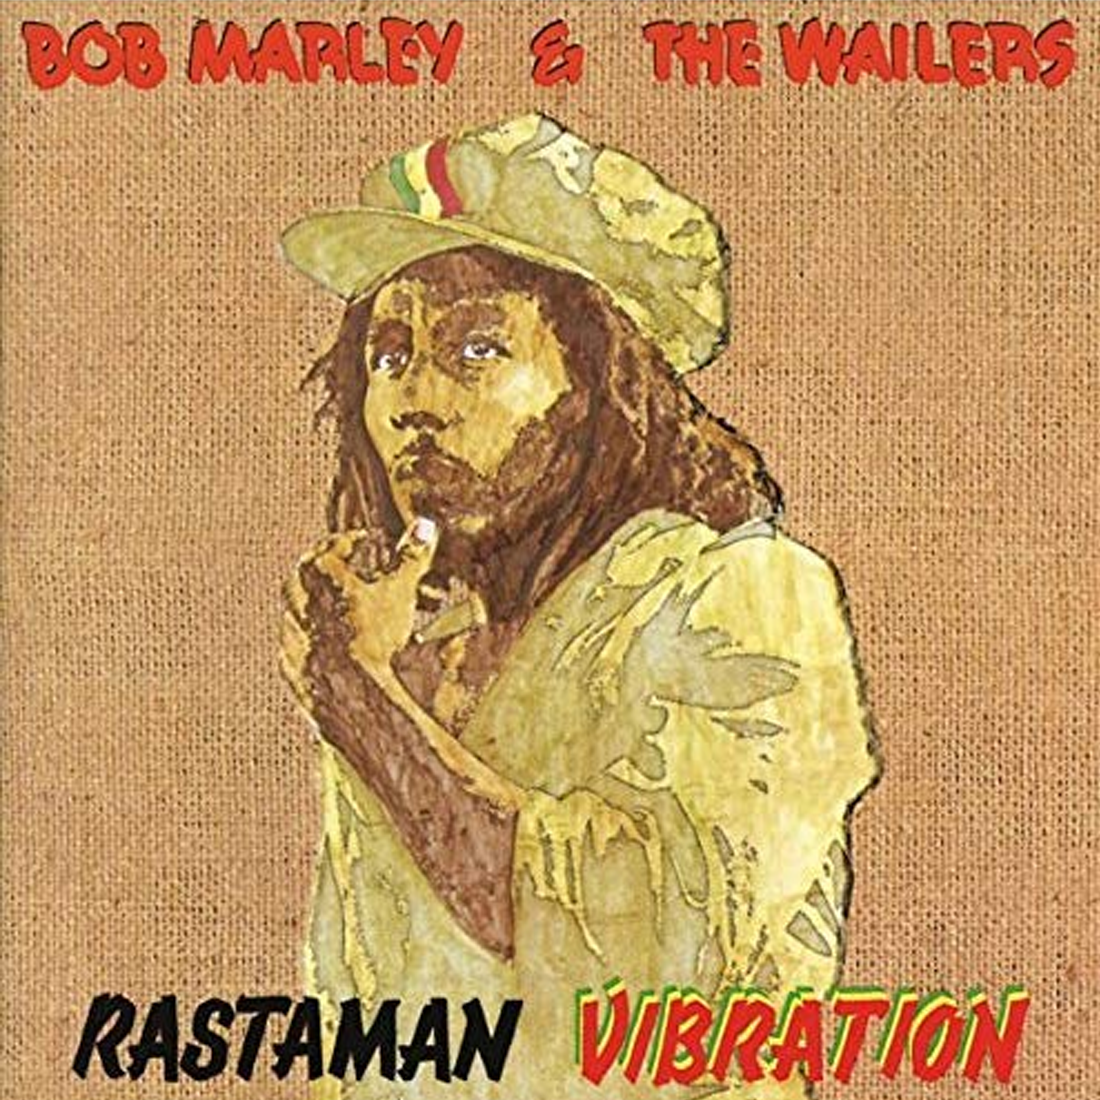 Bob Marley and The Wailers - Rastaman Vibration (Remastered)